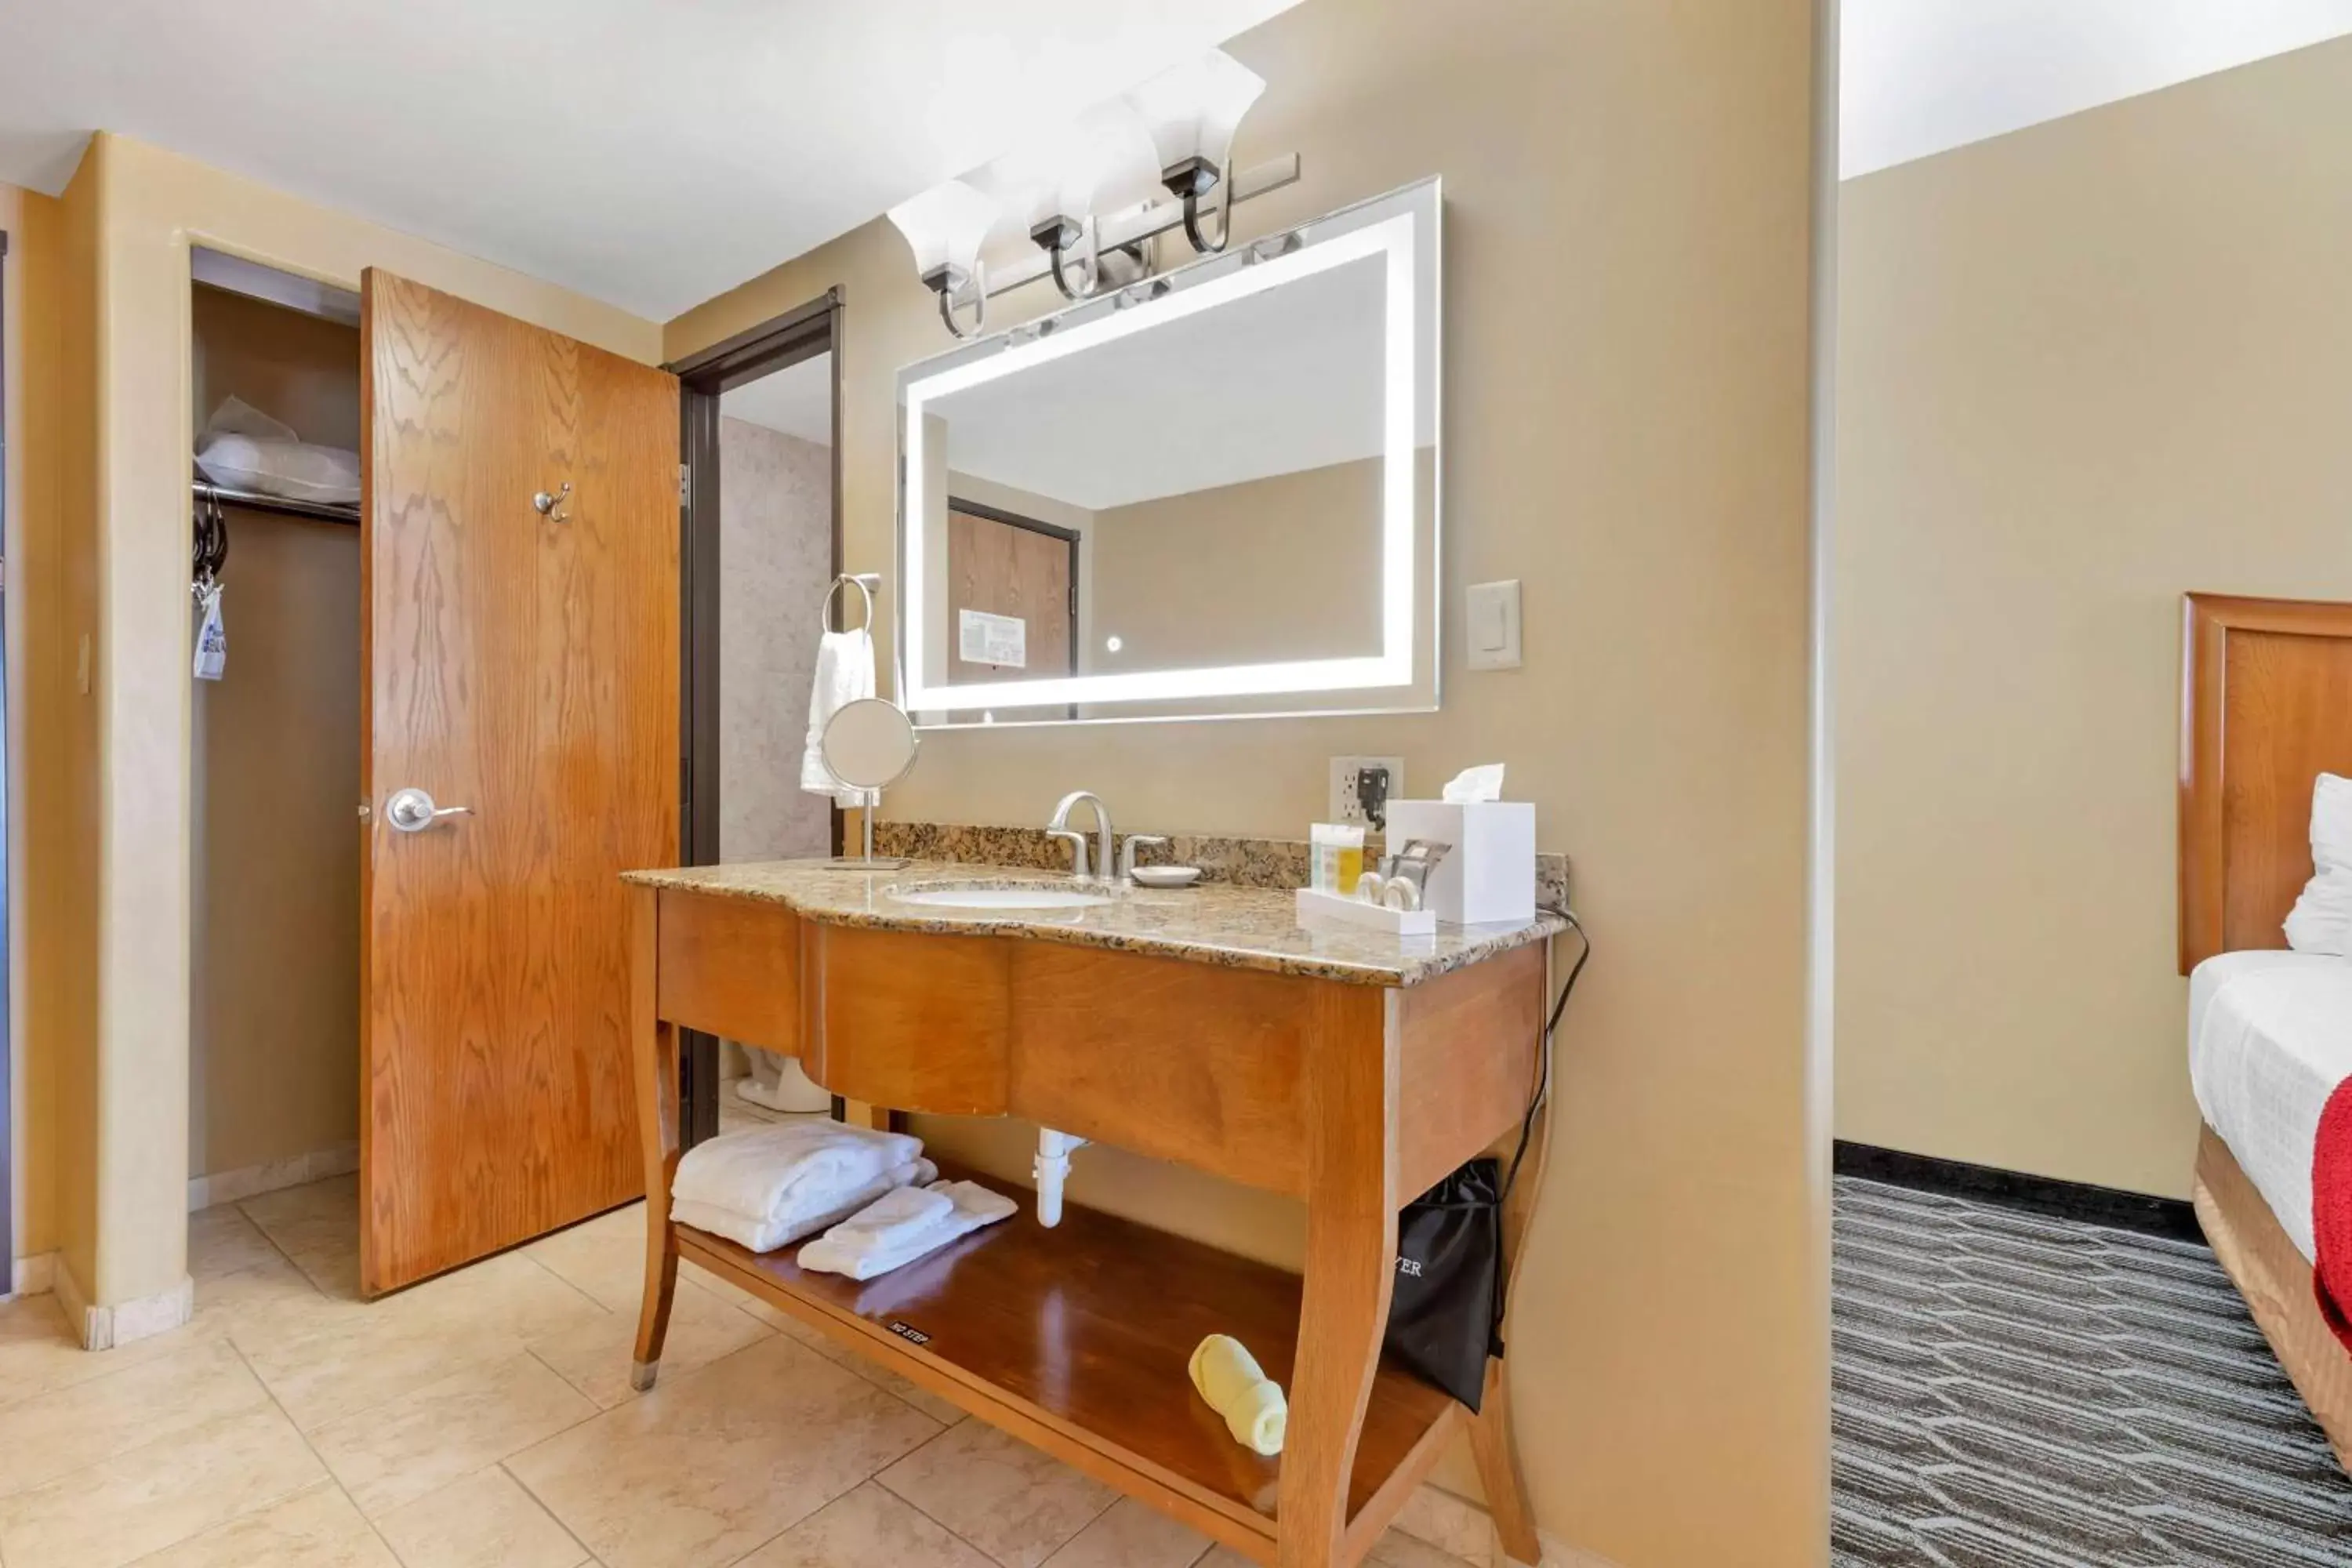 Bedroom, Bathroom in Best Western Plus Swiss Chalet Hotel & Suites